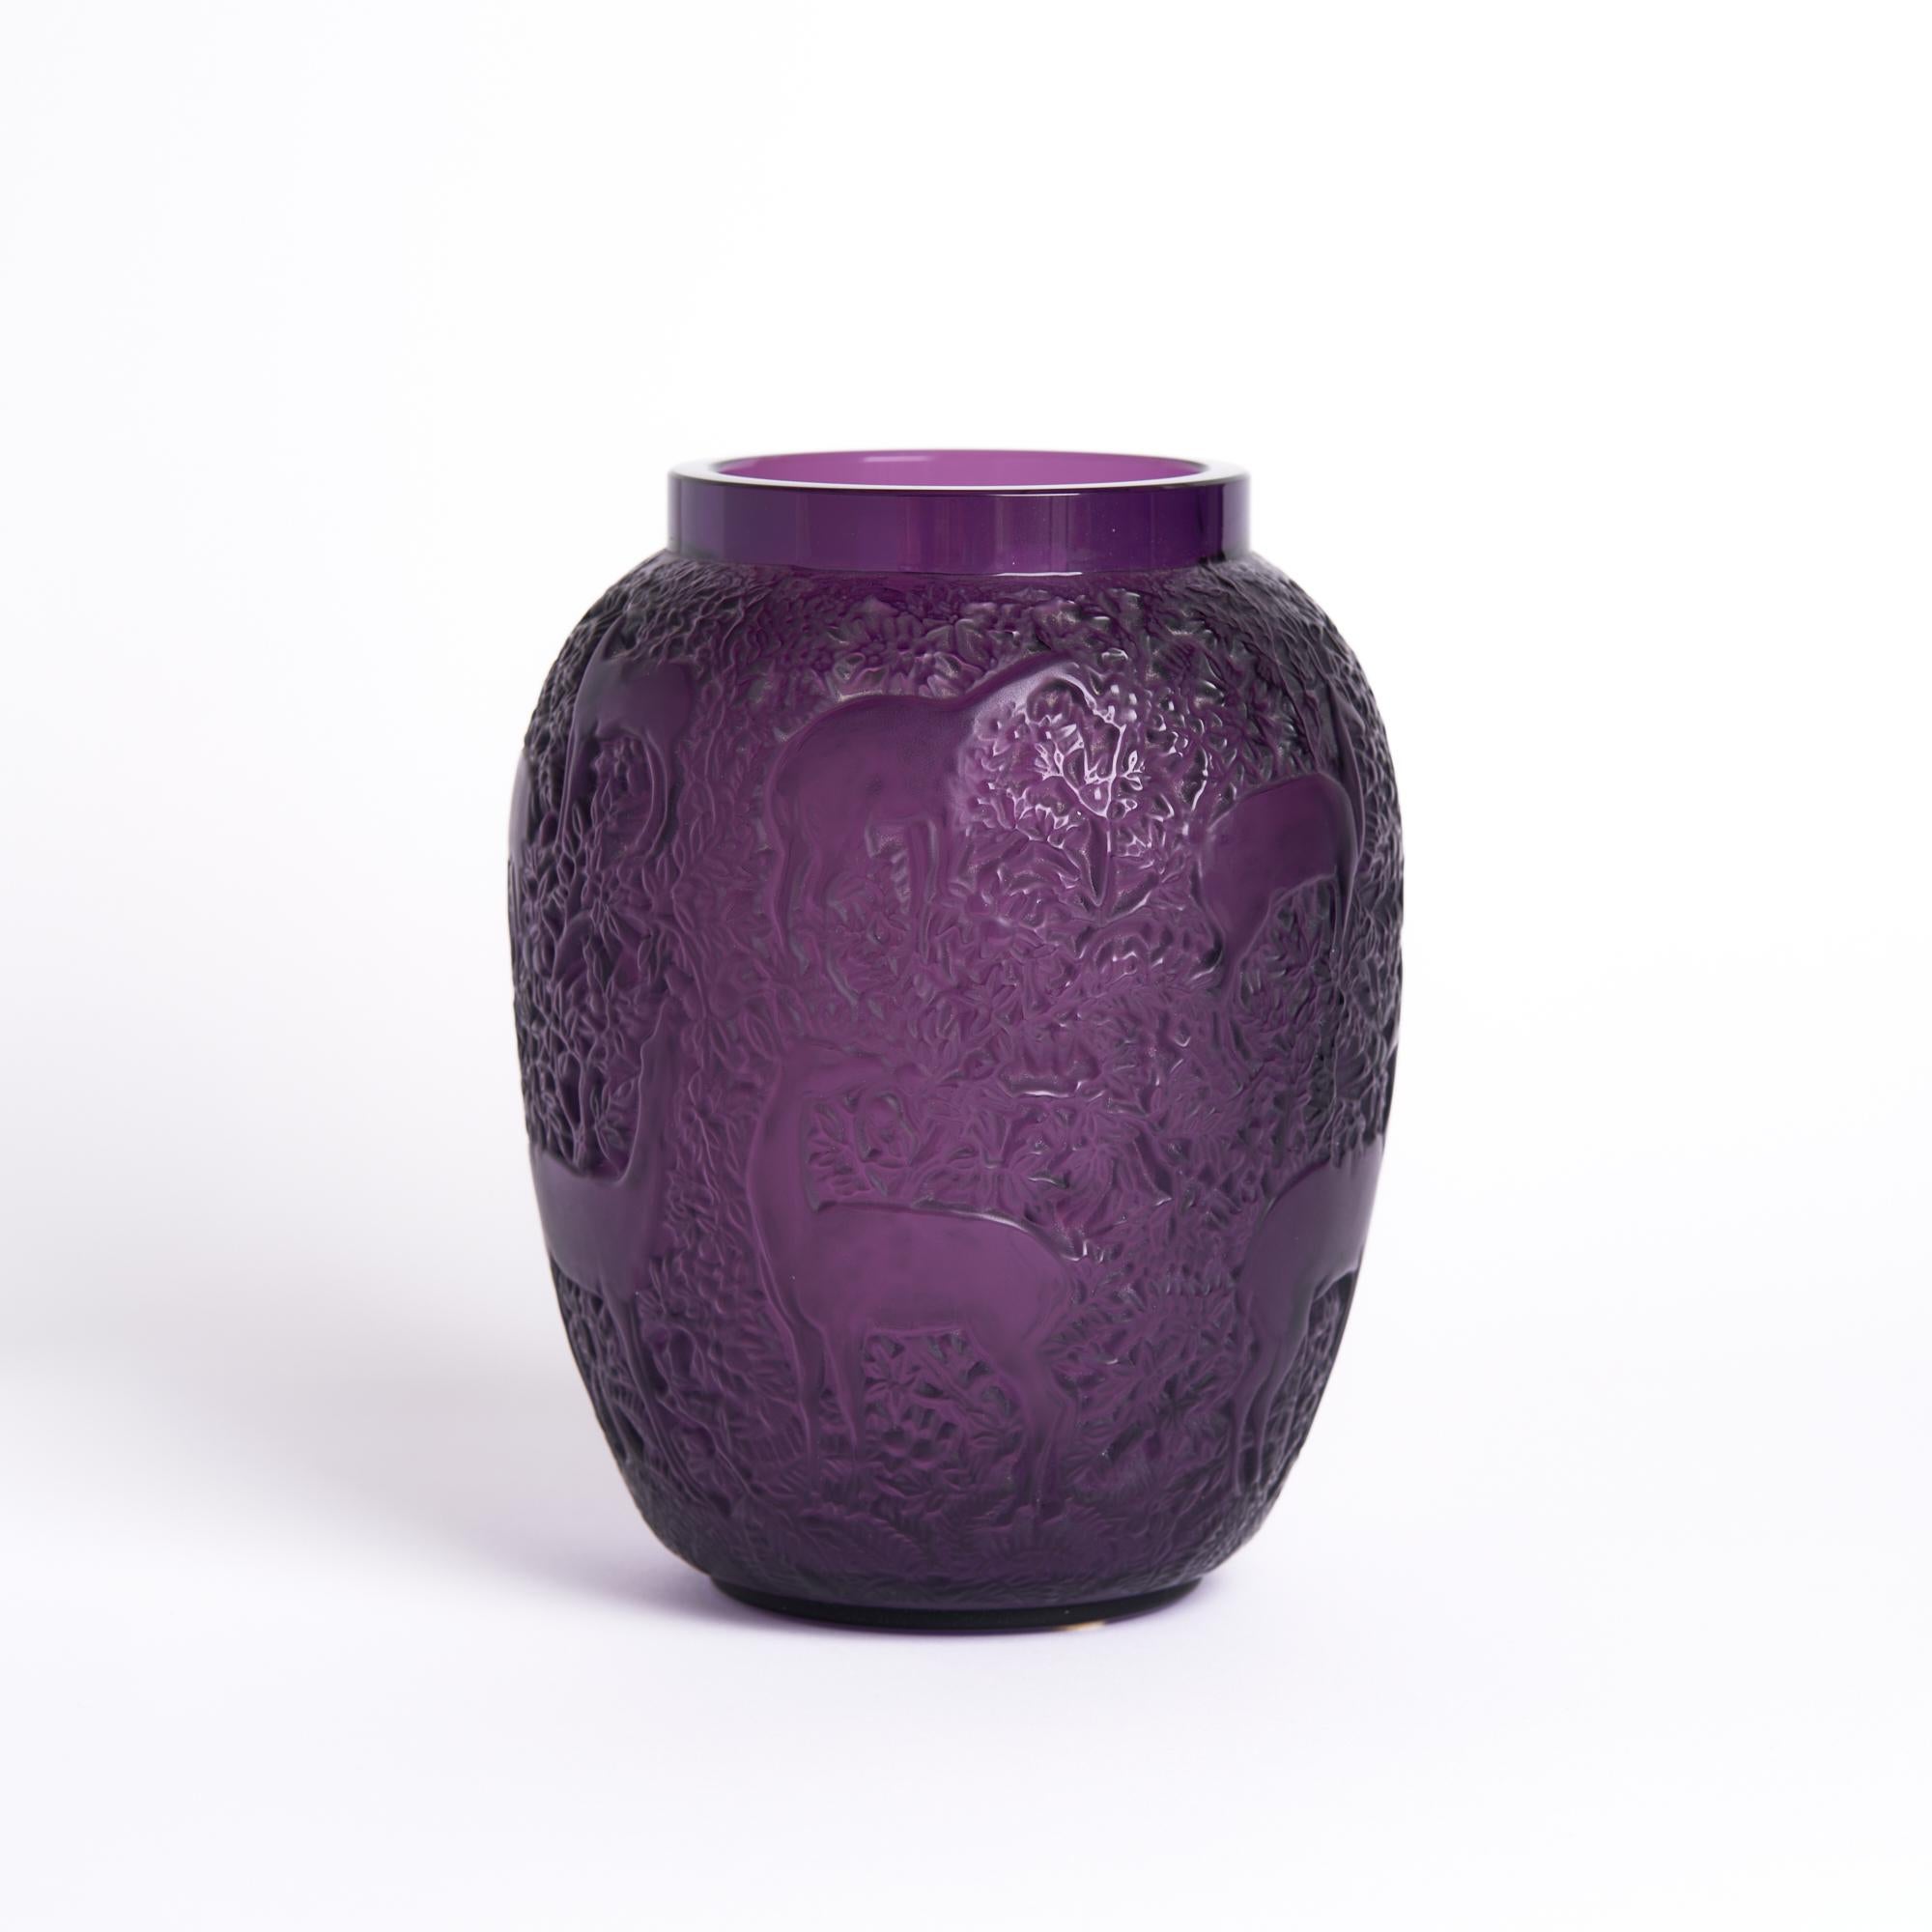 Vase Biches en verre violet de Lalique

Ce vase mesure : 5.5 de large x 5,5 de profond x 6,75 de haut et est en très bon état

Nous prenons nos photos dans un studio à éclairage contrôlé afin de montrer le plus de détails possible. Nous ne faisons